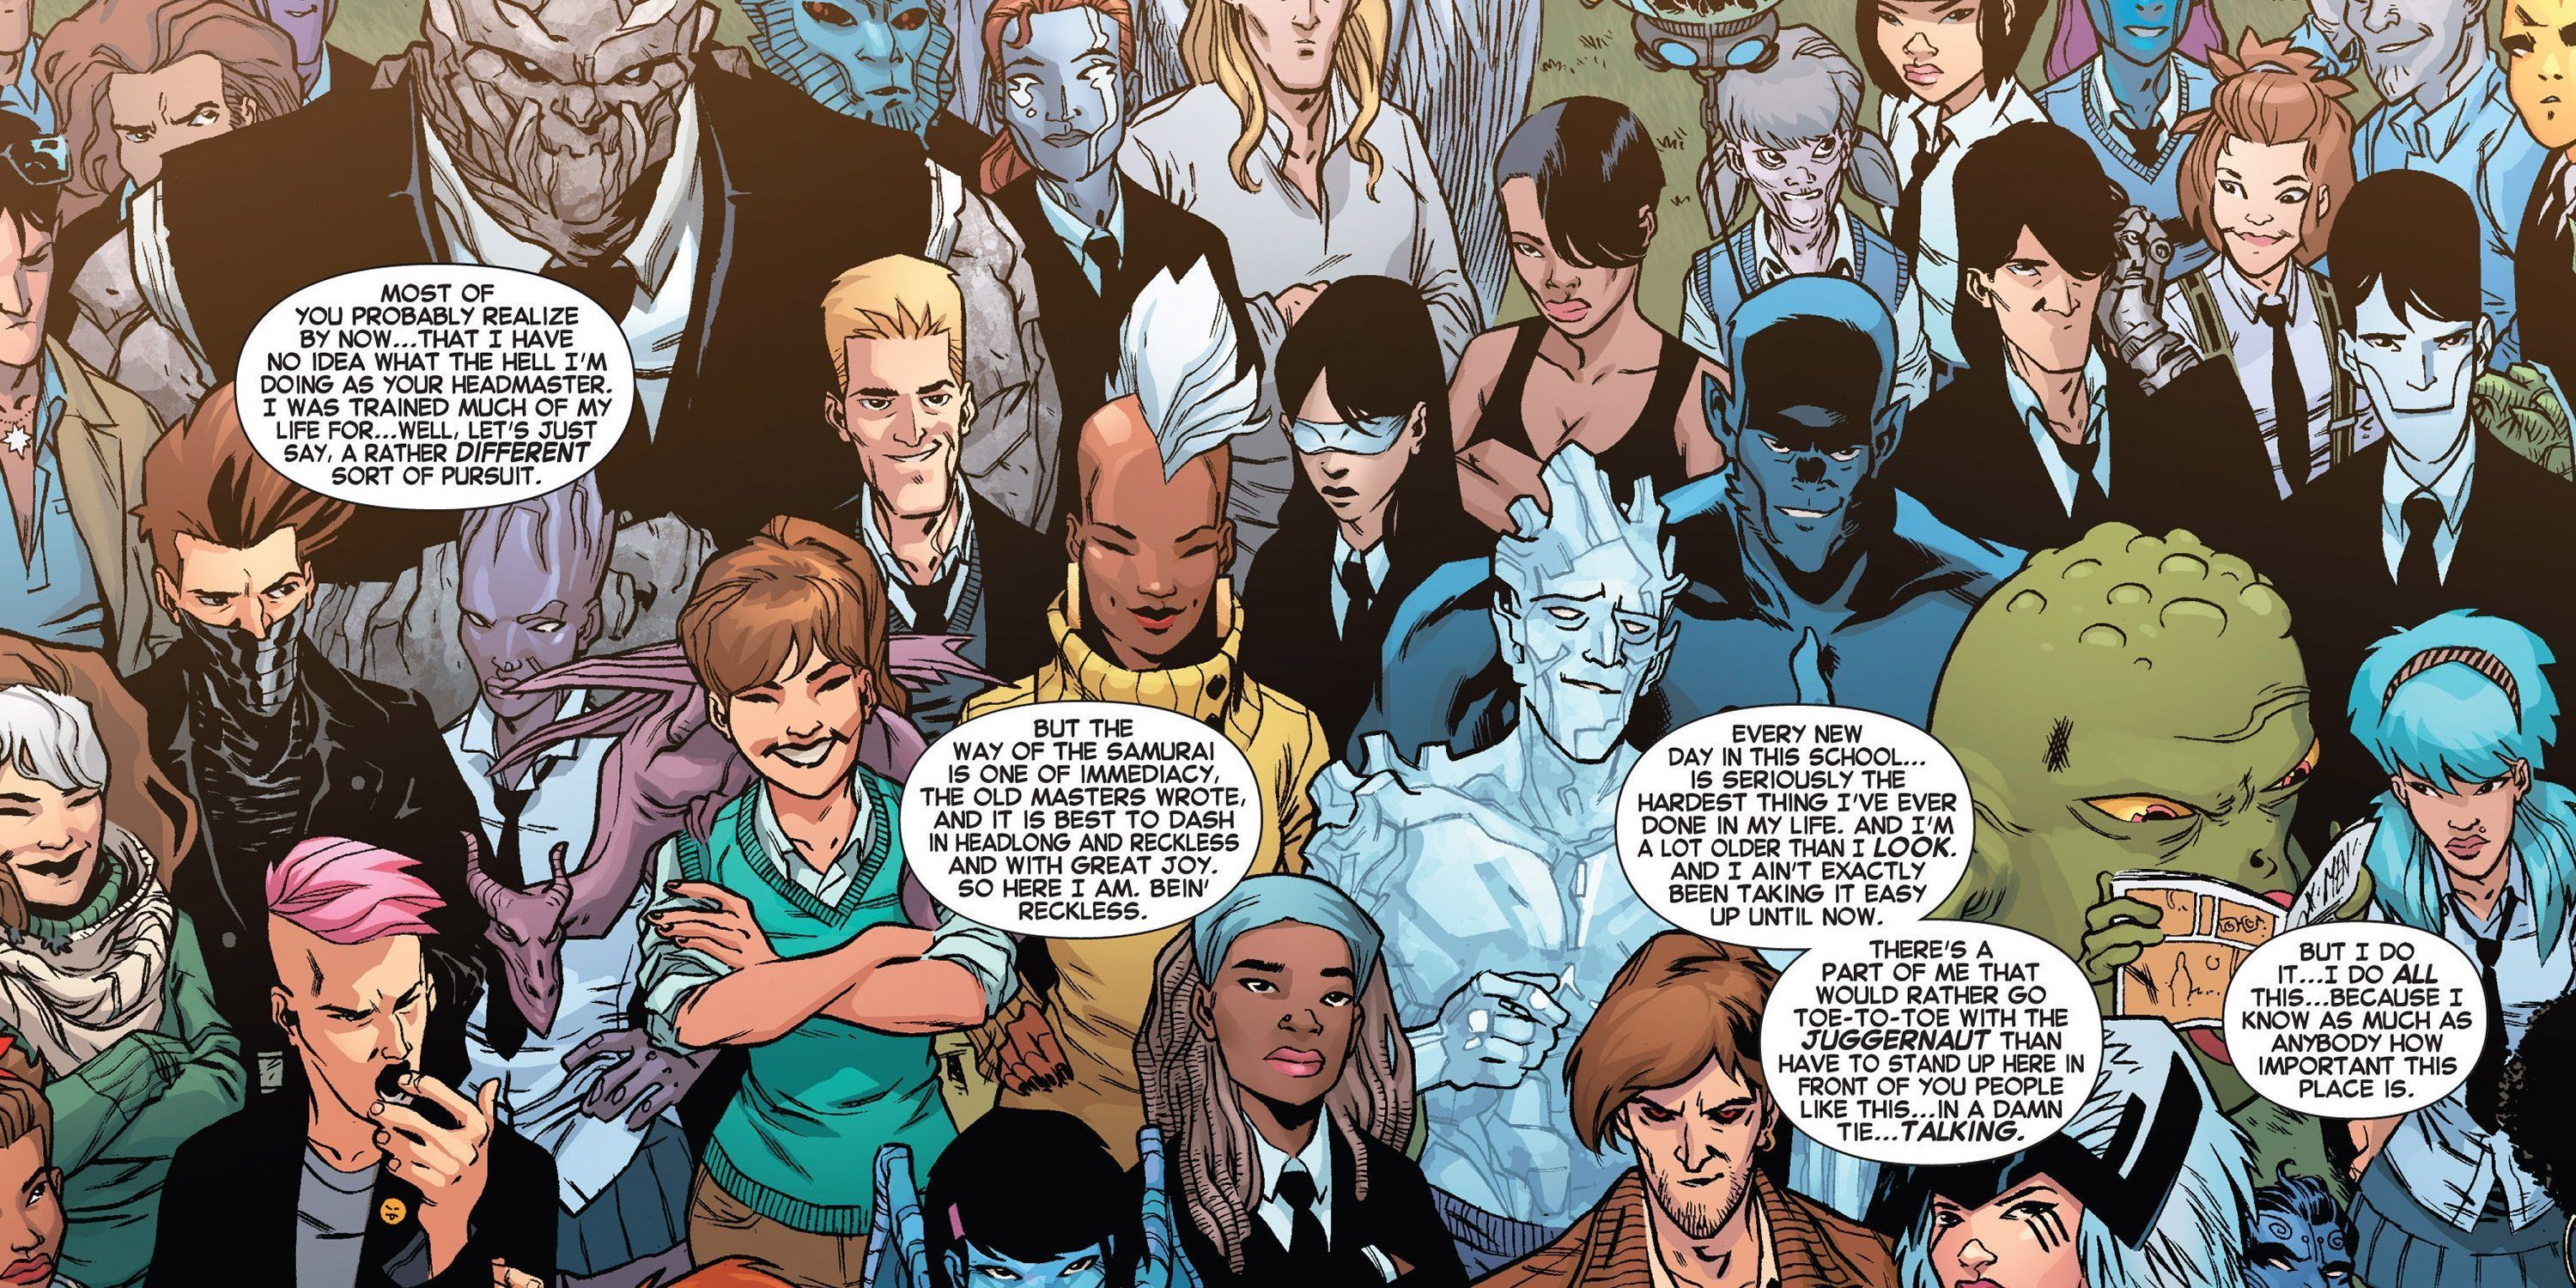 Student body of Xavier's School in the X-Men